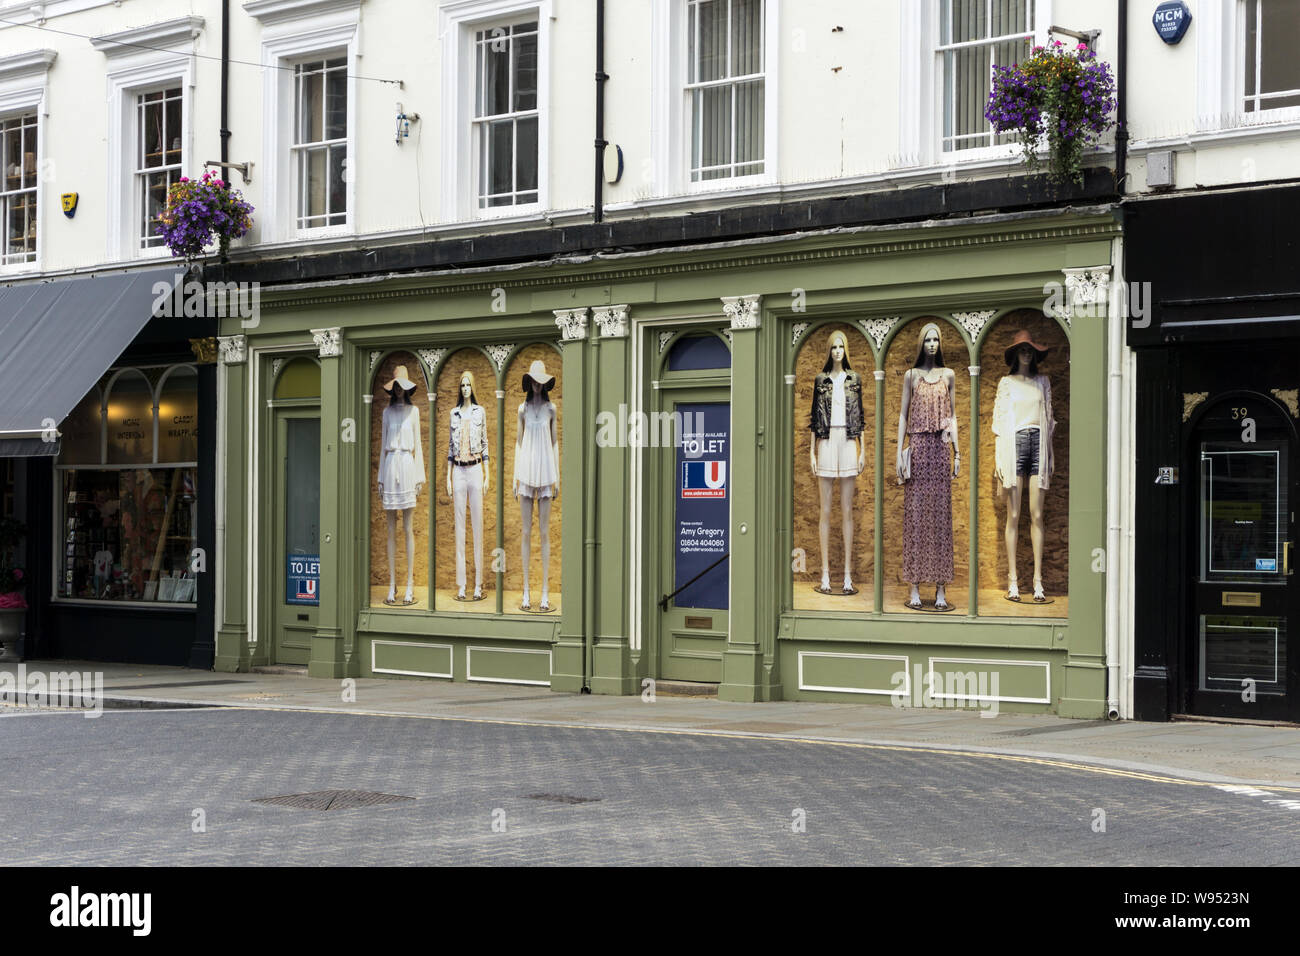 Leere Doppel mit Glasfront, Ladenlokalen, die zuvor von Adams Bäckerei, St Giles St, Norethampton, Großbritannien besetzt; Windows durch Plakate von Models dekoriert Stockfoto